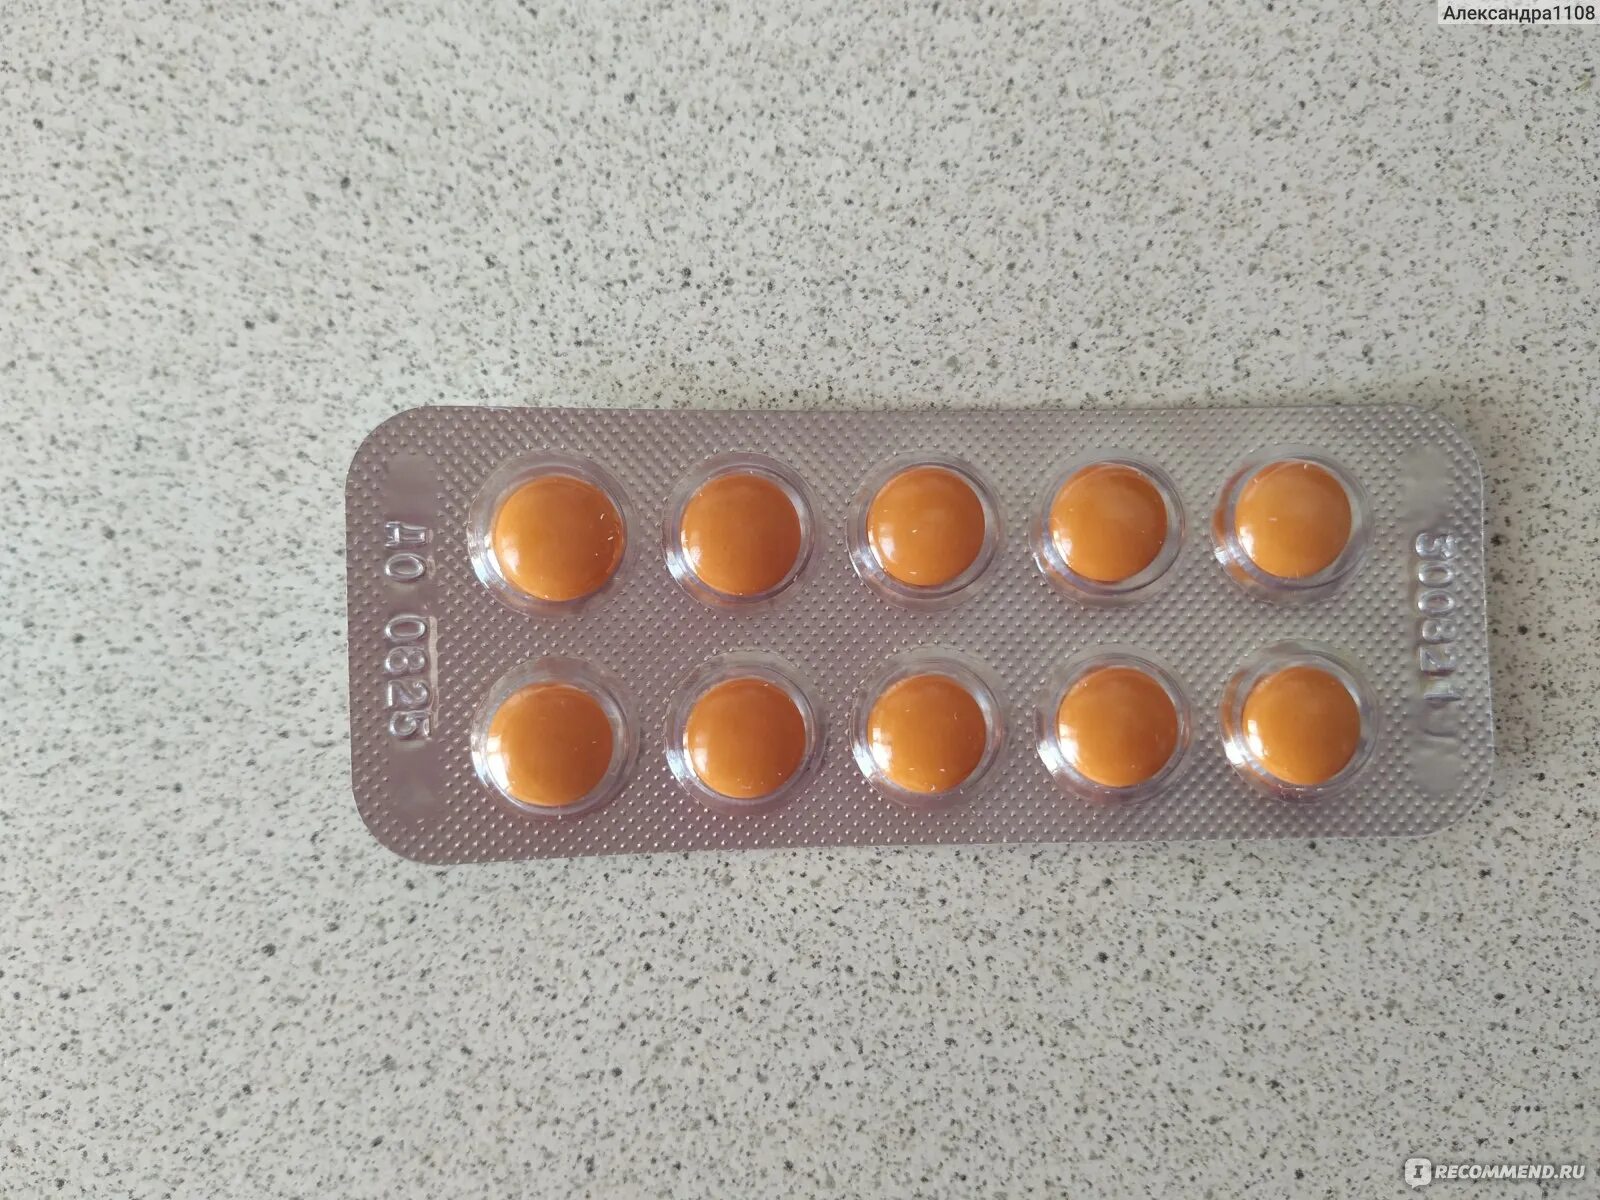 Нитроксолин отзывы врачей. Нитроксолин желтые таблетки. Нитроксолин при беременности 3. Цитофлавин таблетки цена. Чем отличаются желтые таблетки нитроксолина от других.